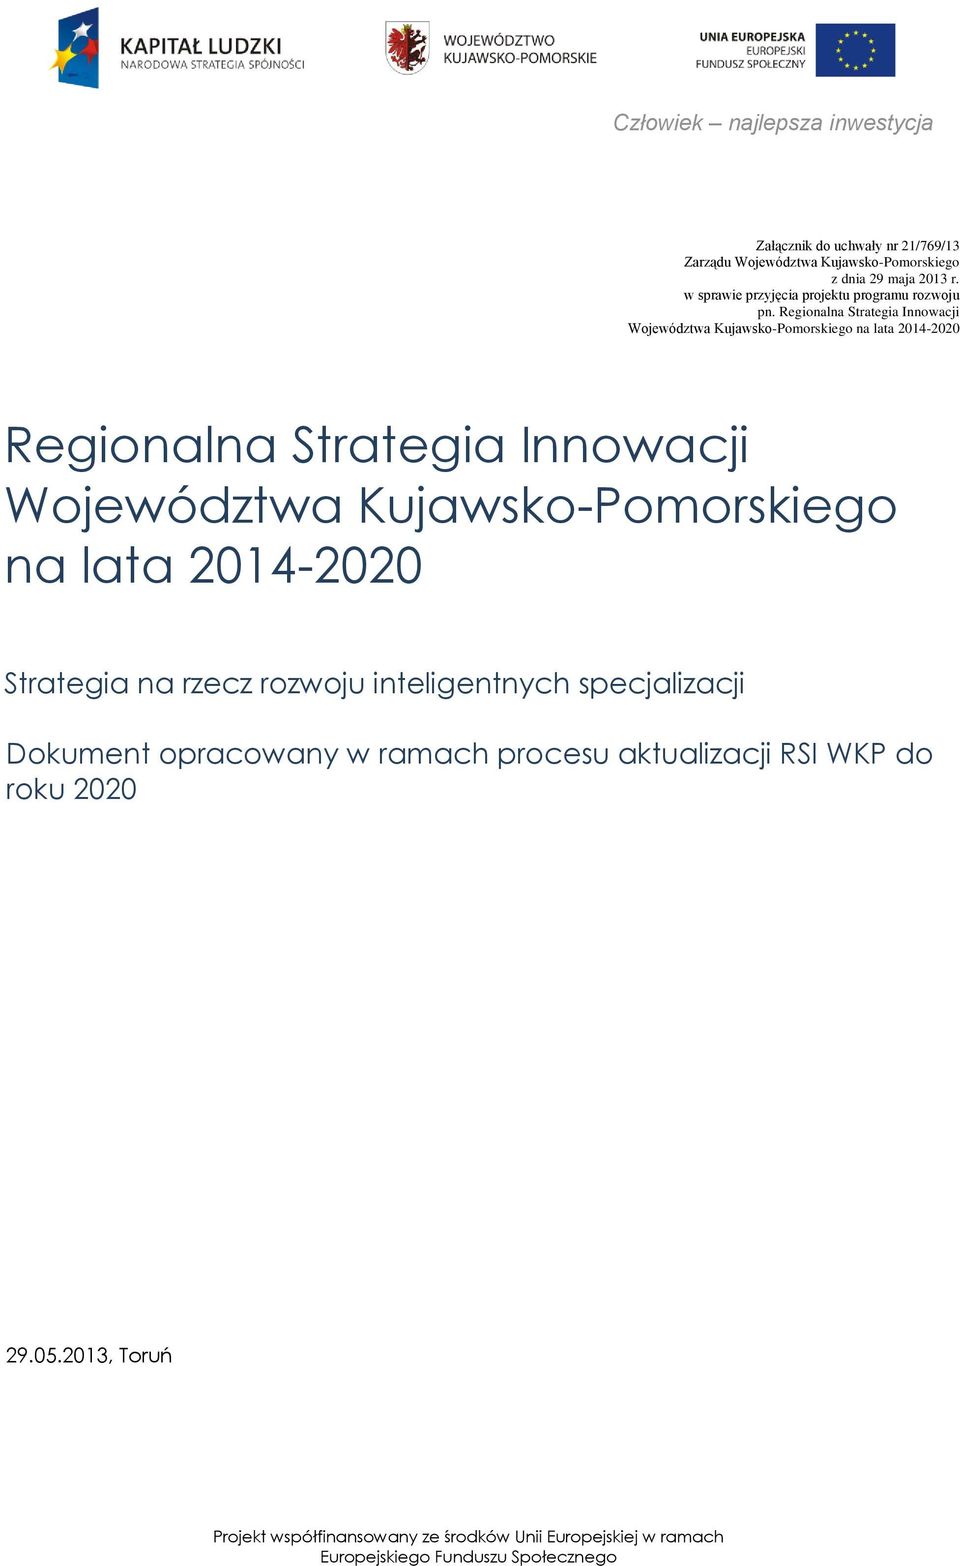 Regionalna Strategia Innowacji Województwa Kujawsko-Pomorskiego na lata 2014-2020 Regionalna Strategia Innowacji Województwa Kujawsko-Pomorskiego